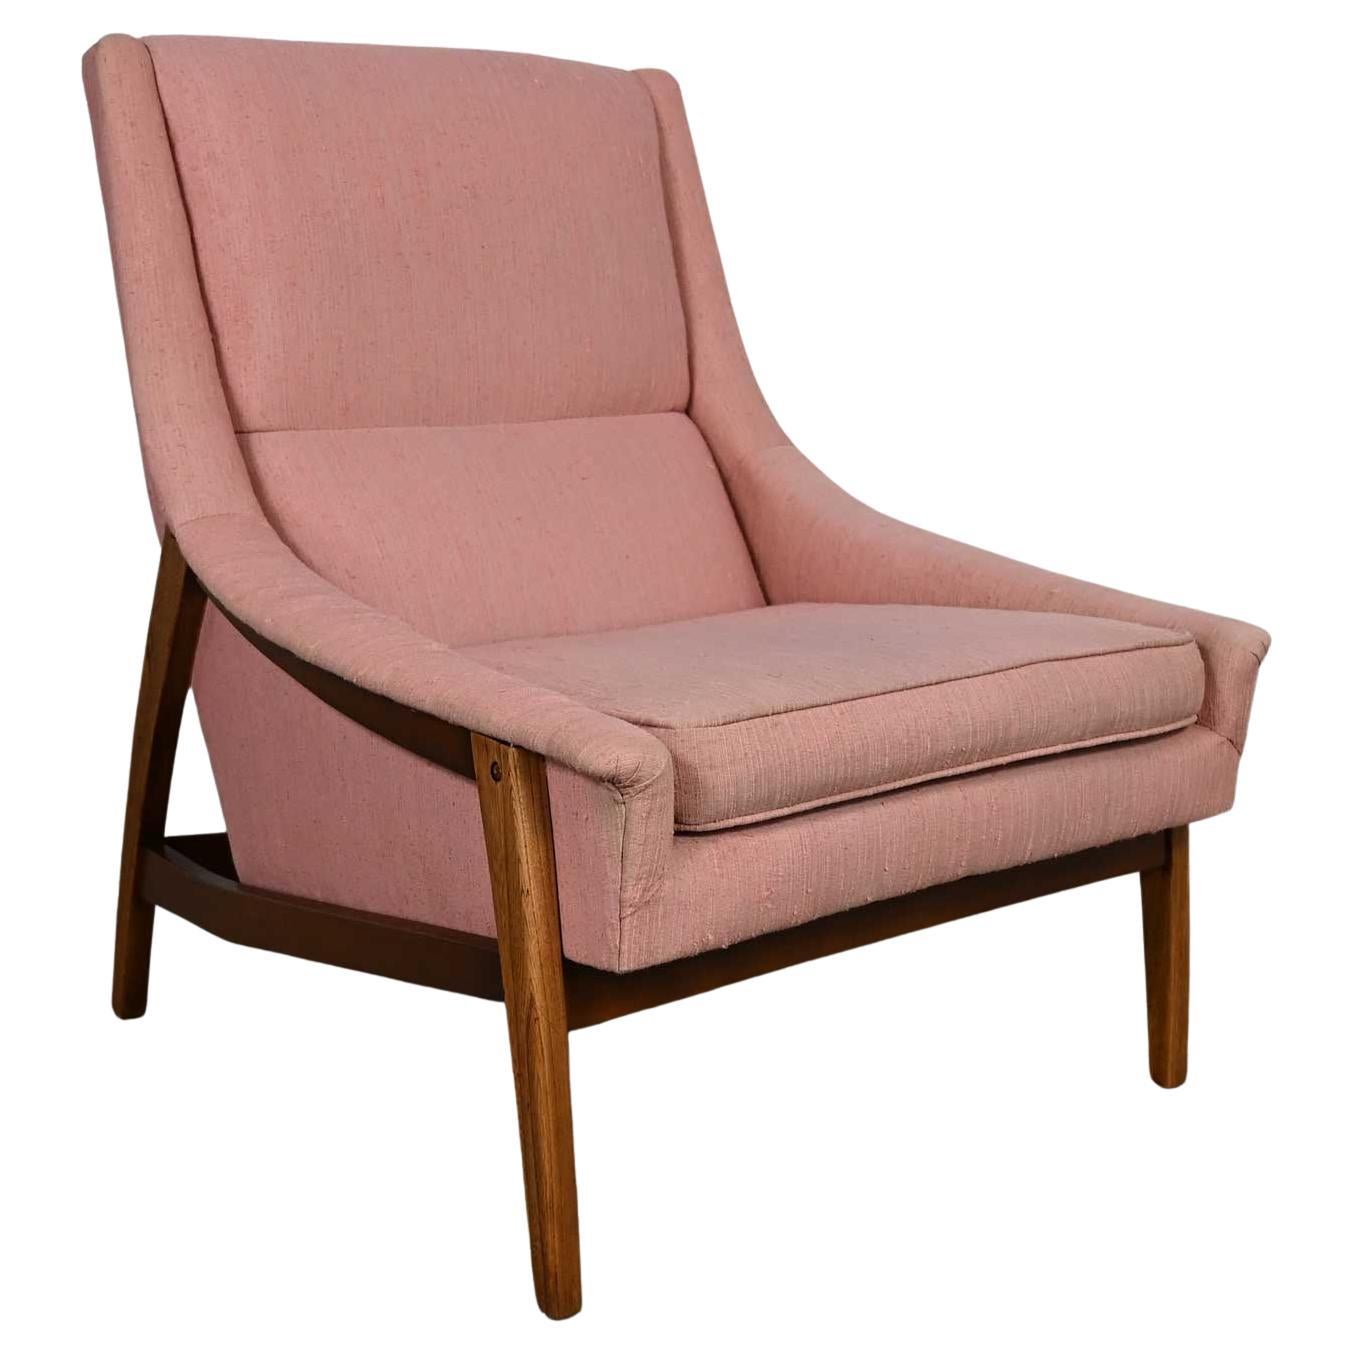 MCM Nussbaum & Esche Gestell mit rosa Stoff Lounge Chair Stil von Dux oder Kroehler